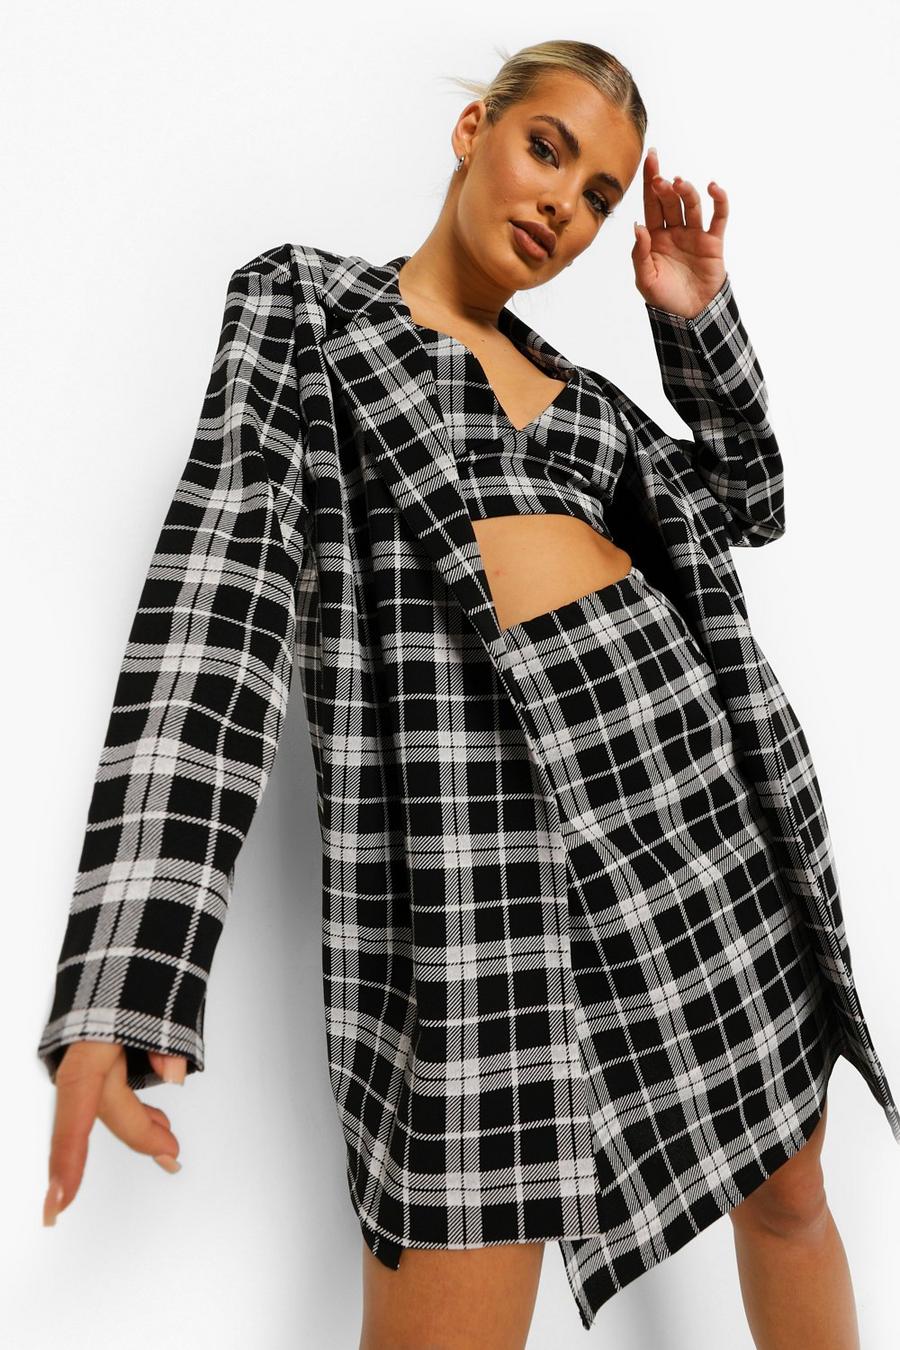 Checkered Blazer And Skirt | lupon.gov.ph